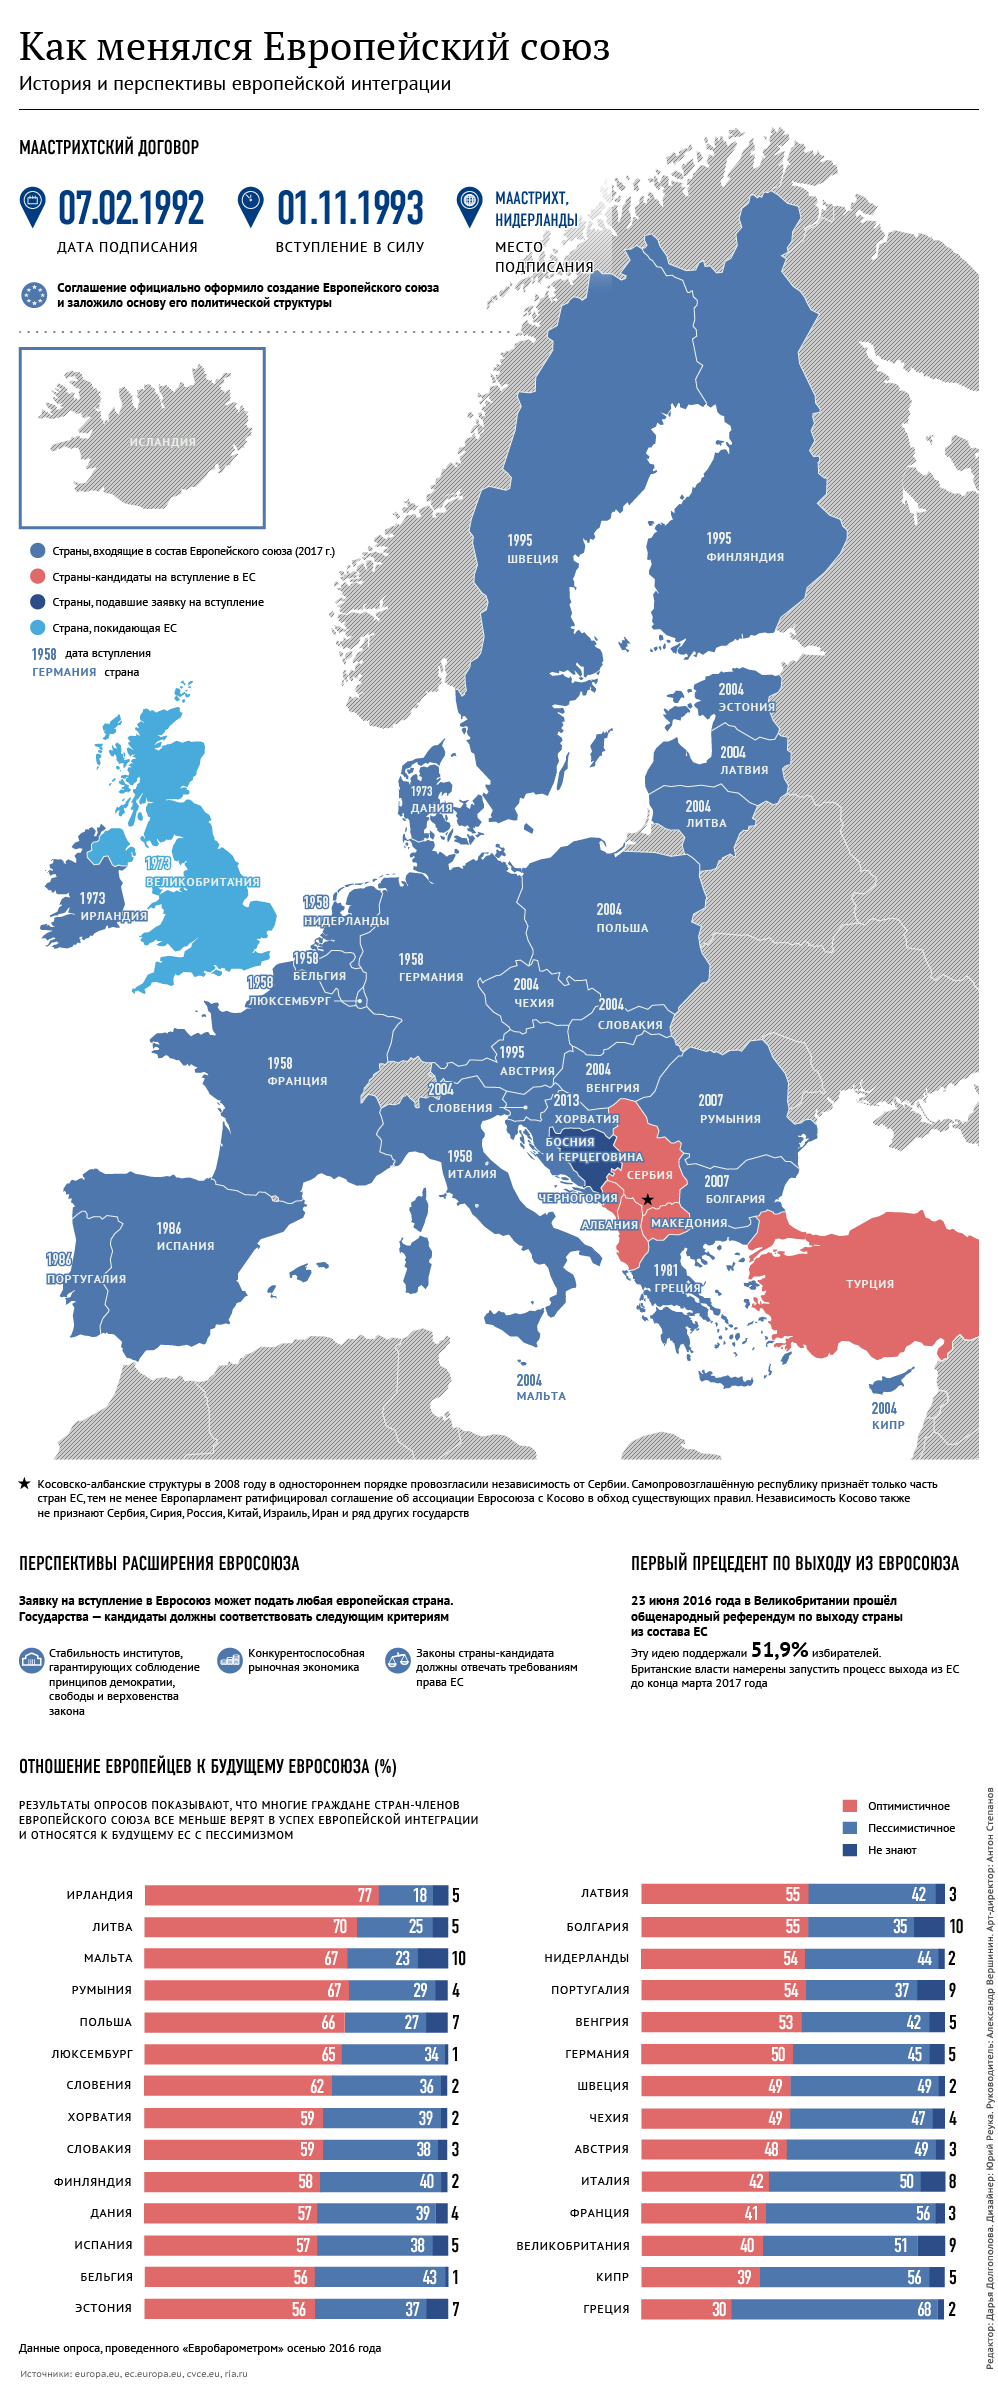 Евросоюз: история и перспективы - Sputnik Литва